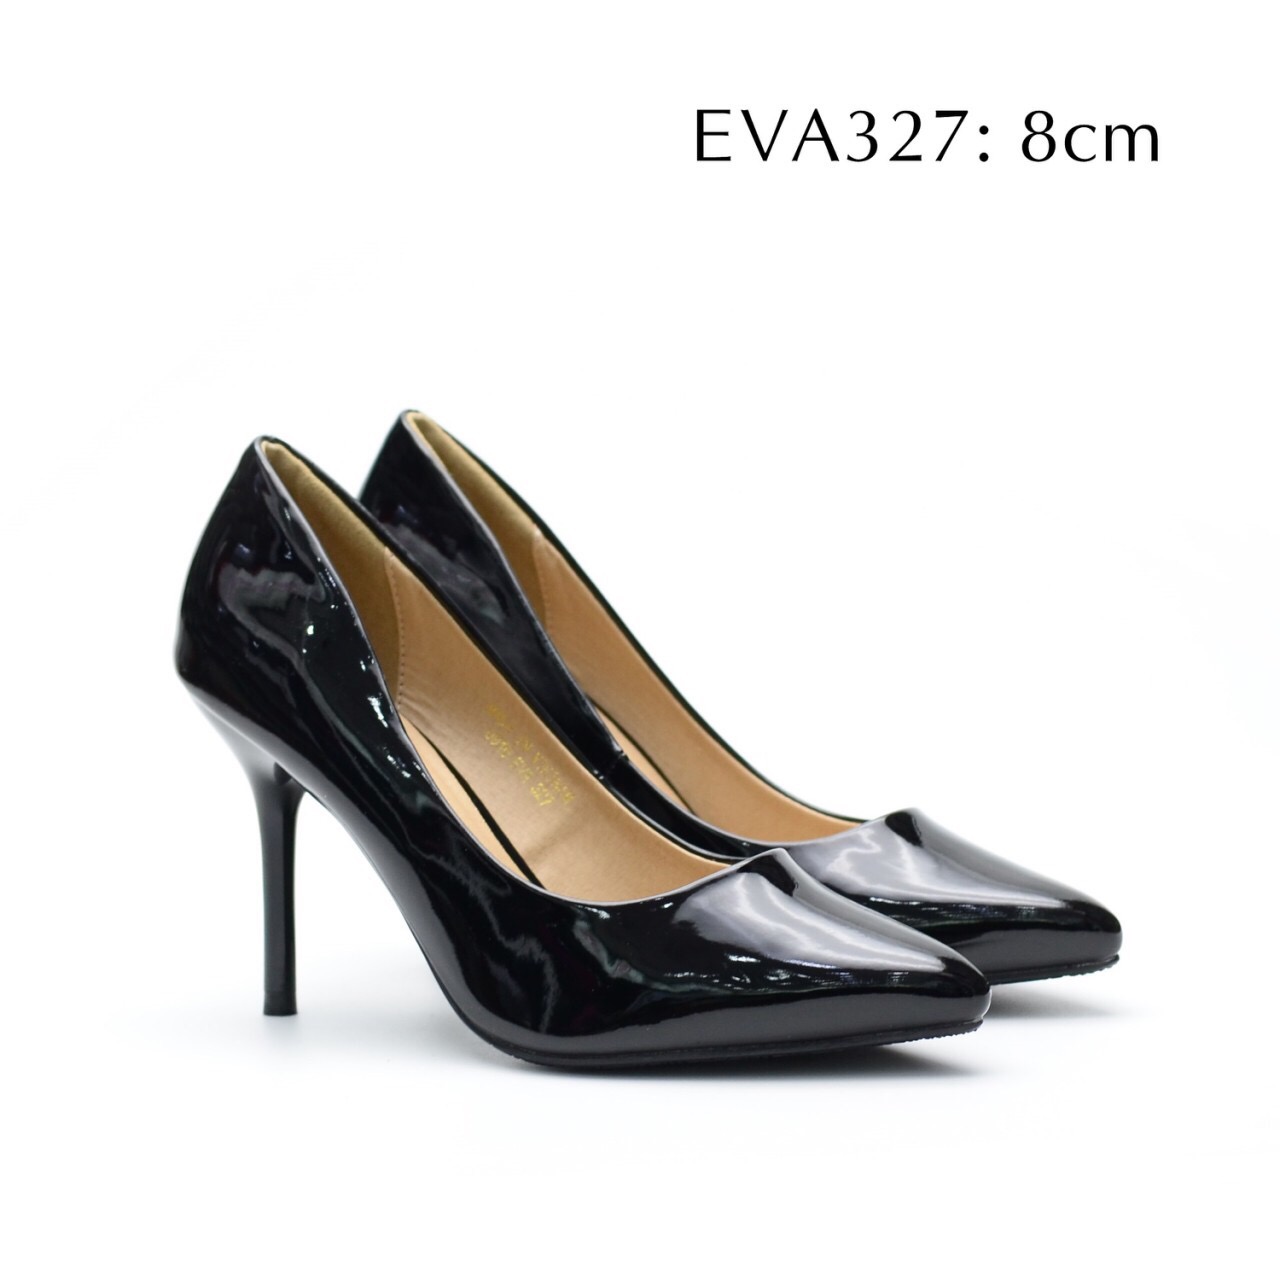 Giày bít mũi EVA327 thiết kế đơn giản da bóng sang trọng